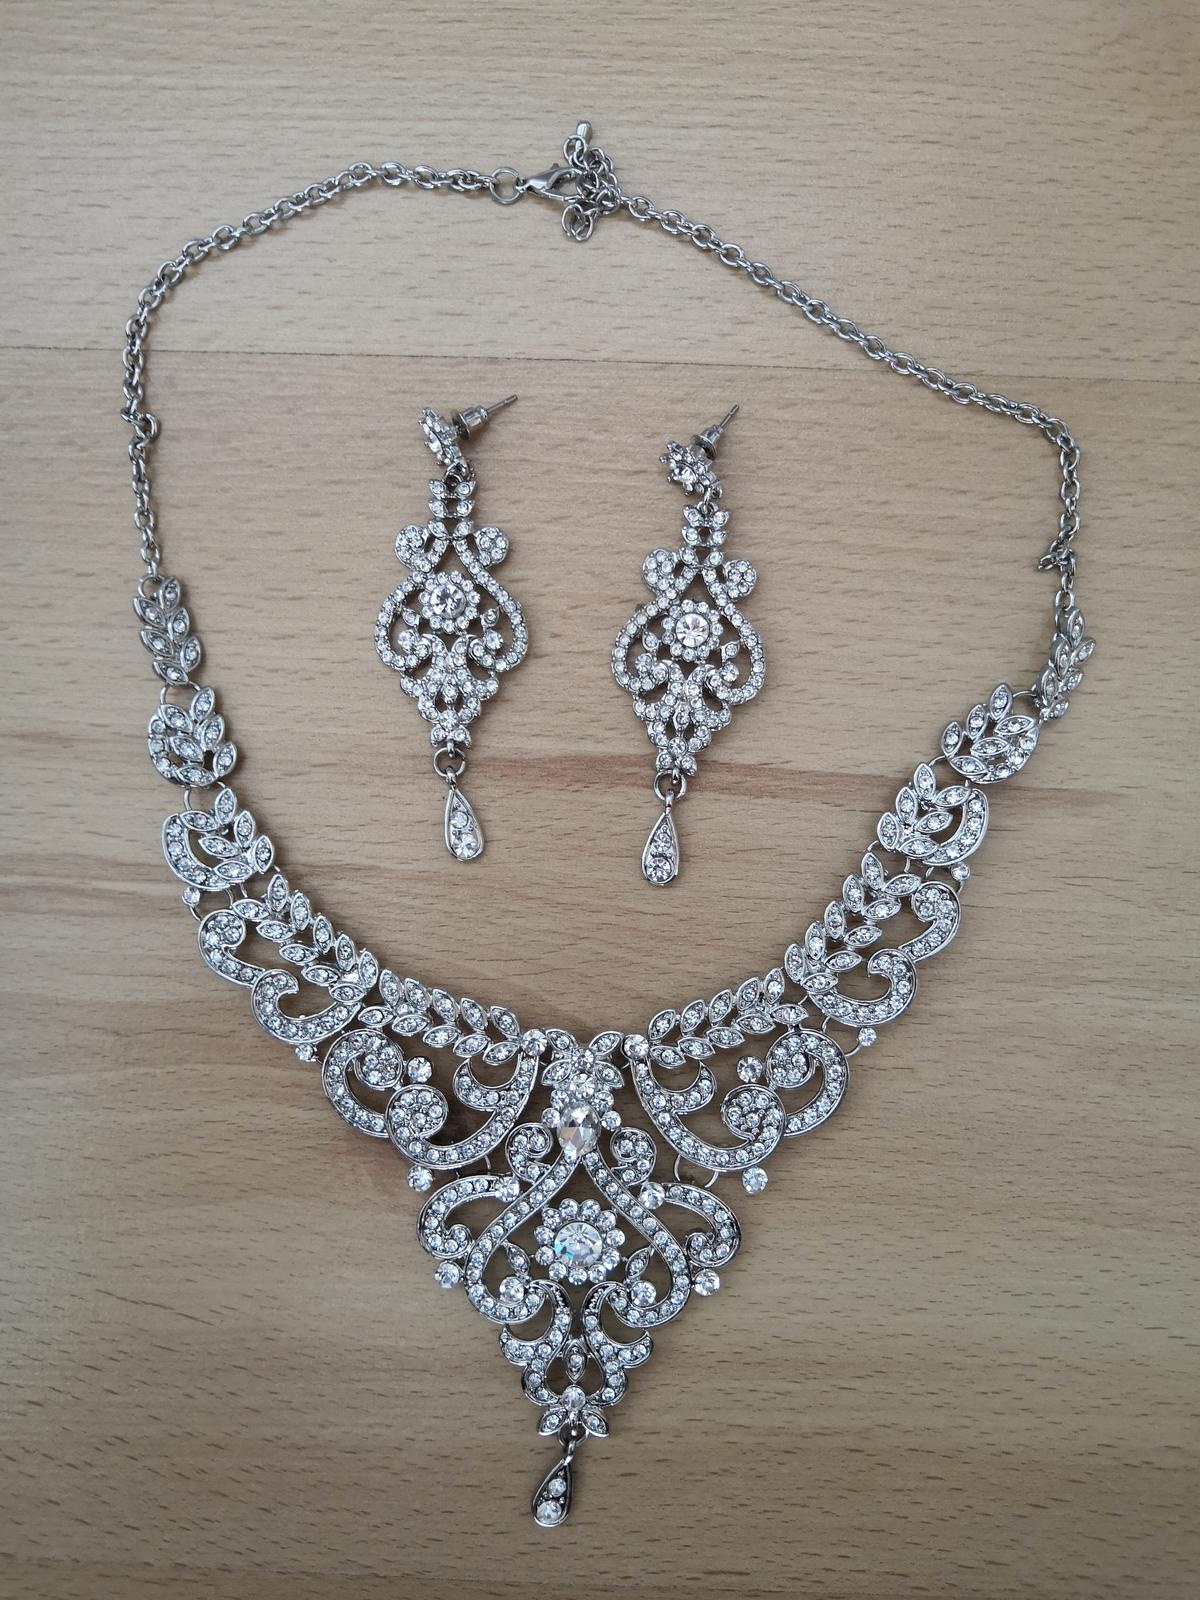 Sada šperků - náušnice, náhrdelník - Obrázek č. 3